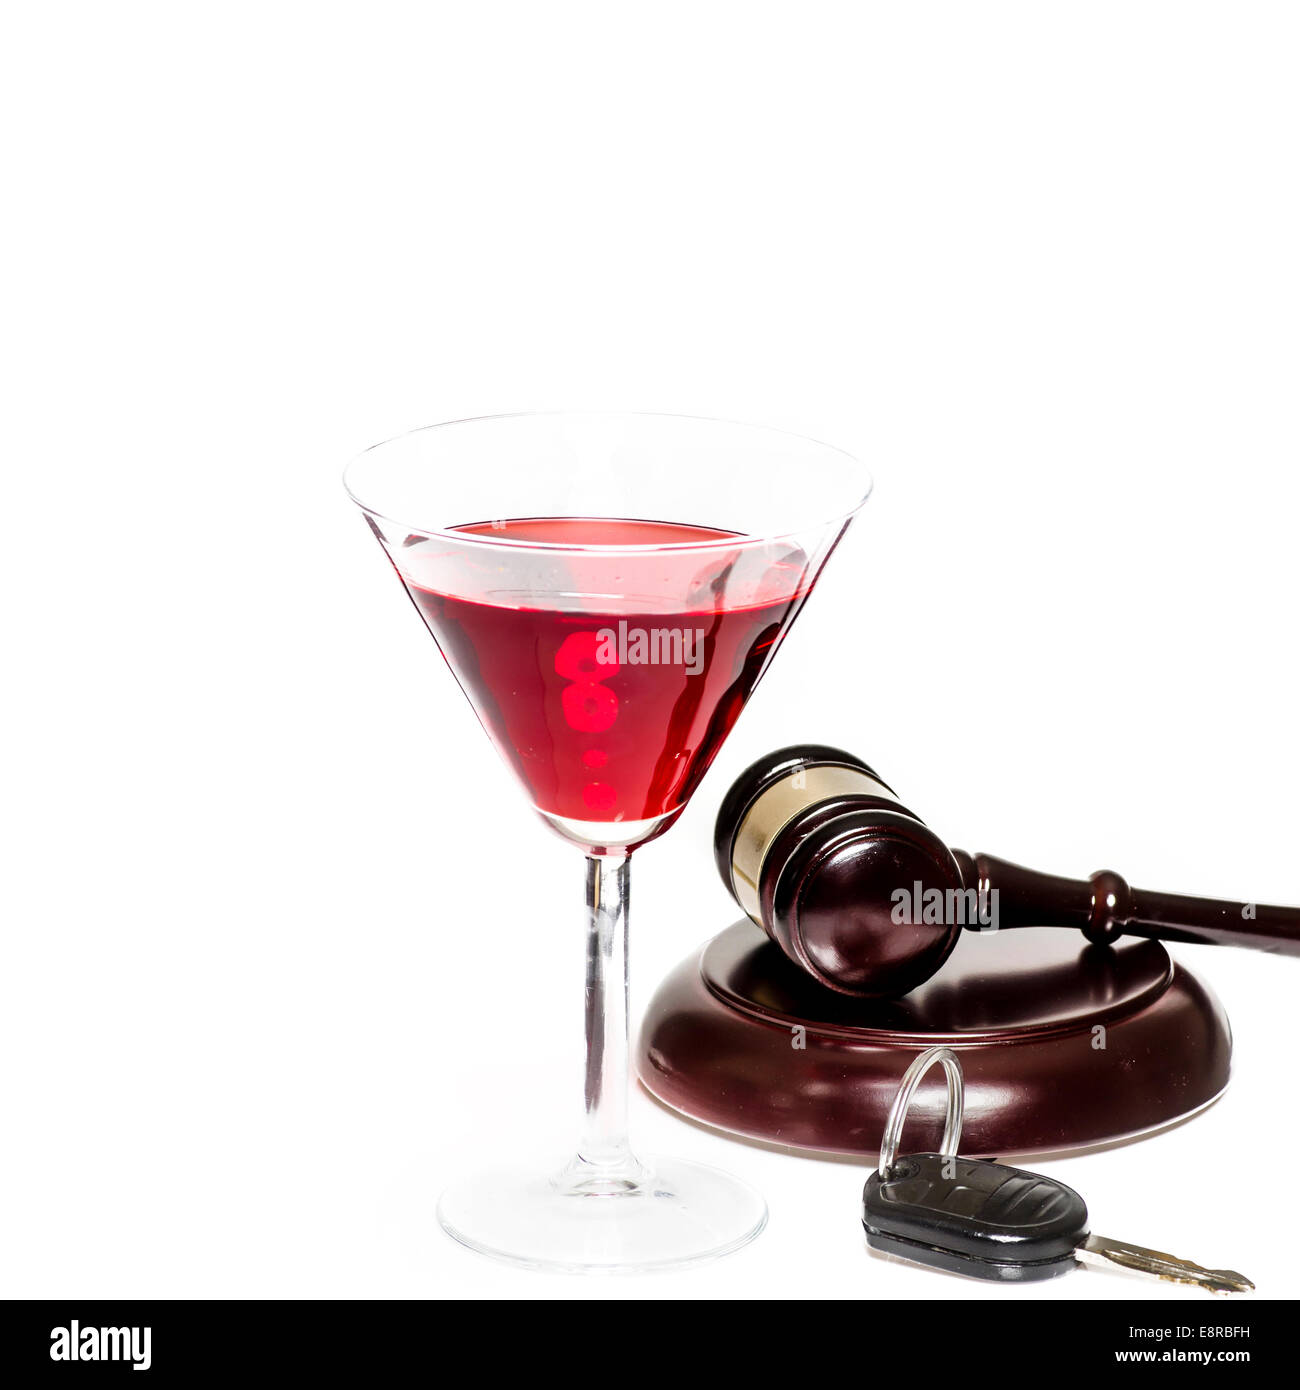 Bere durante la guida sotto influenza di alcool diritto legale Concetto di immagine Foto Stock